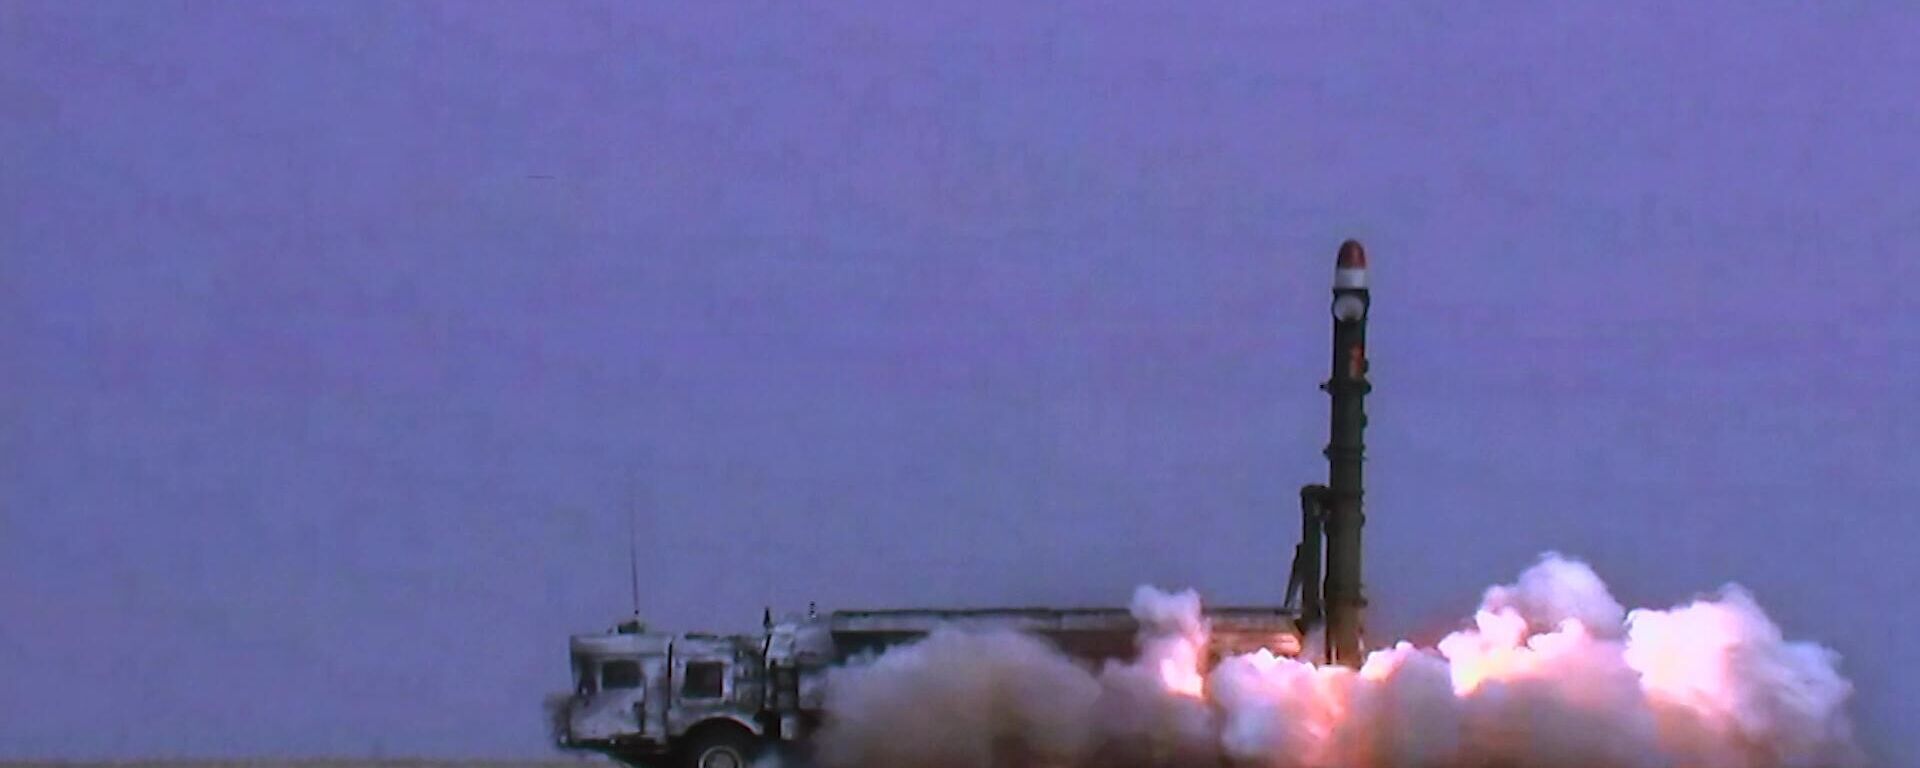 Оперативно-тактический комплекс Искандер производит запуск ракеты в рамках учений сил стратегического сдерживания Гром-2022 Минобороны РФ - Sputnik Latvija, 1920, 15.04.2022